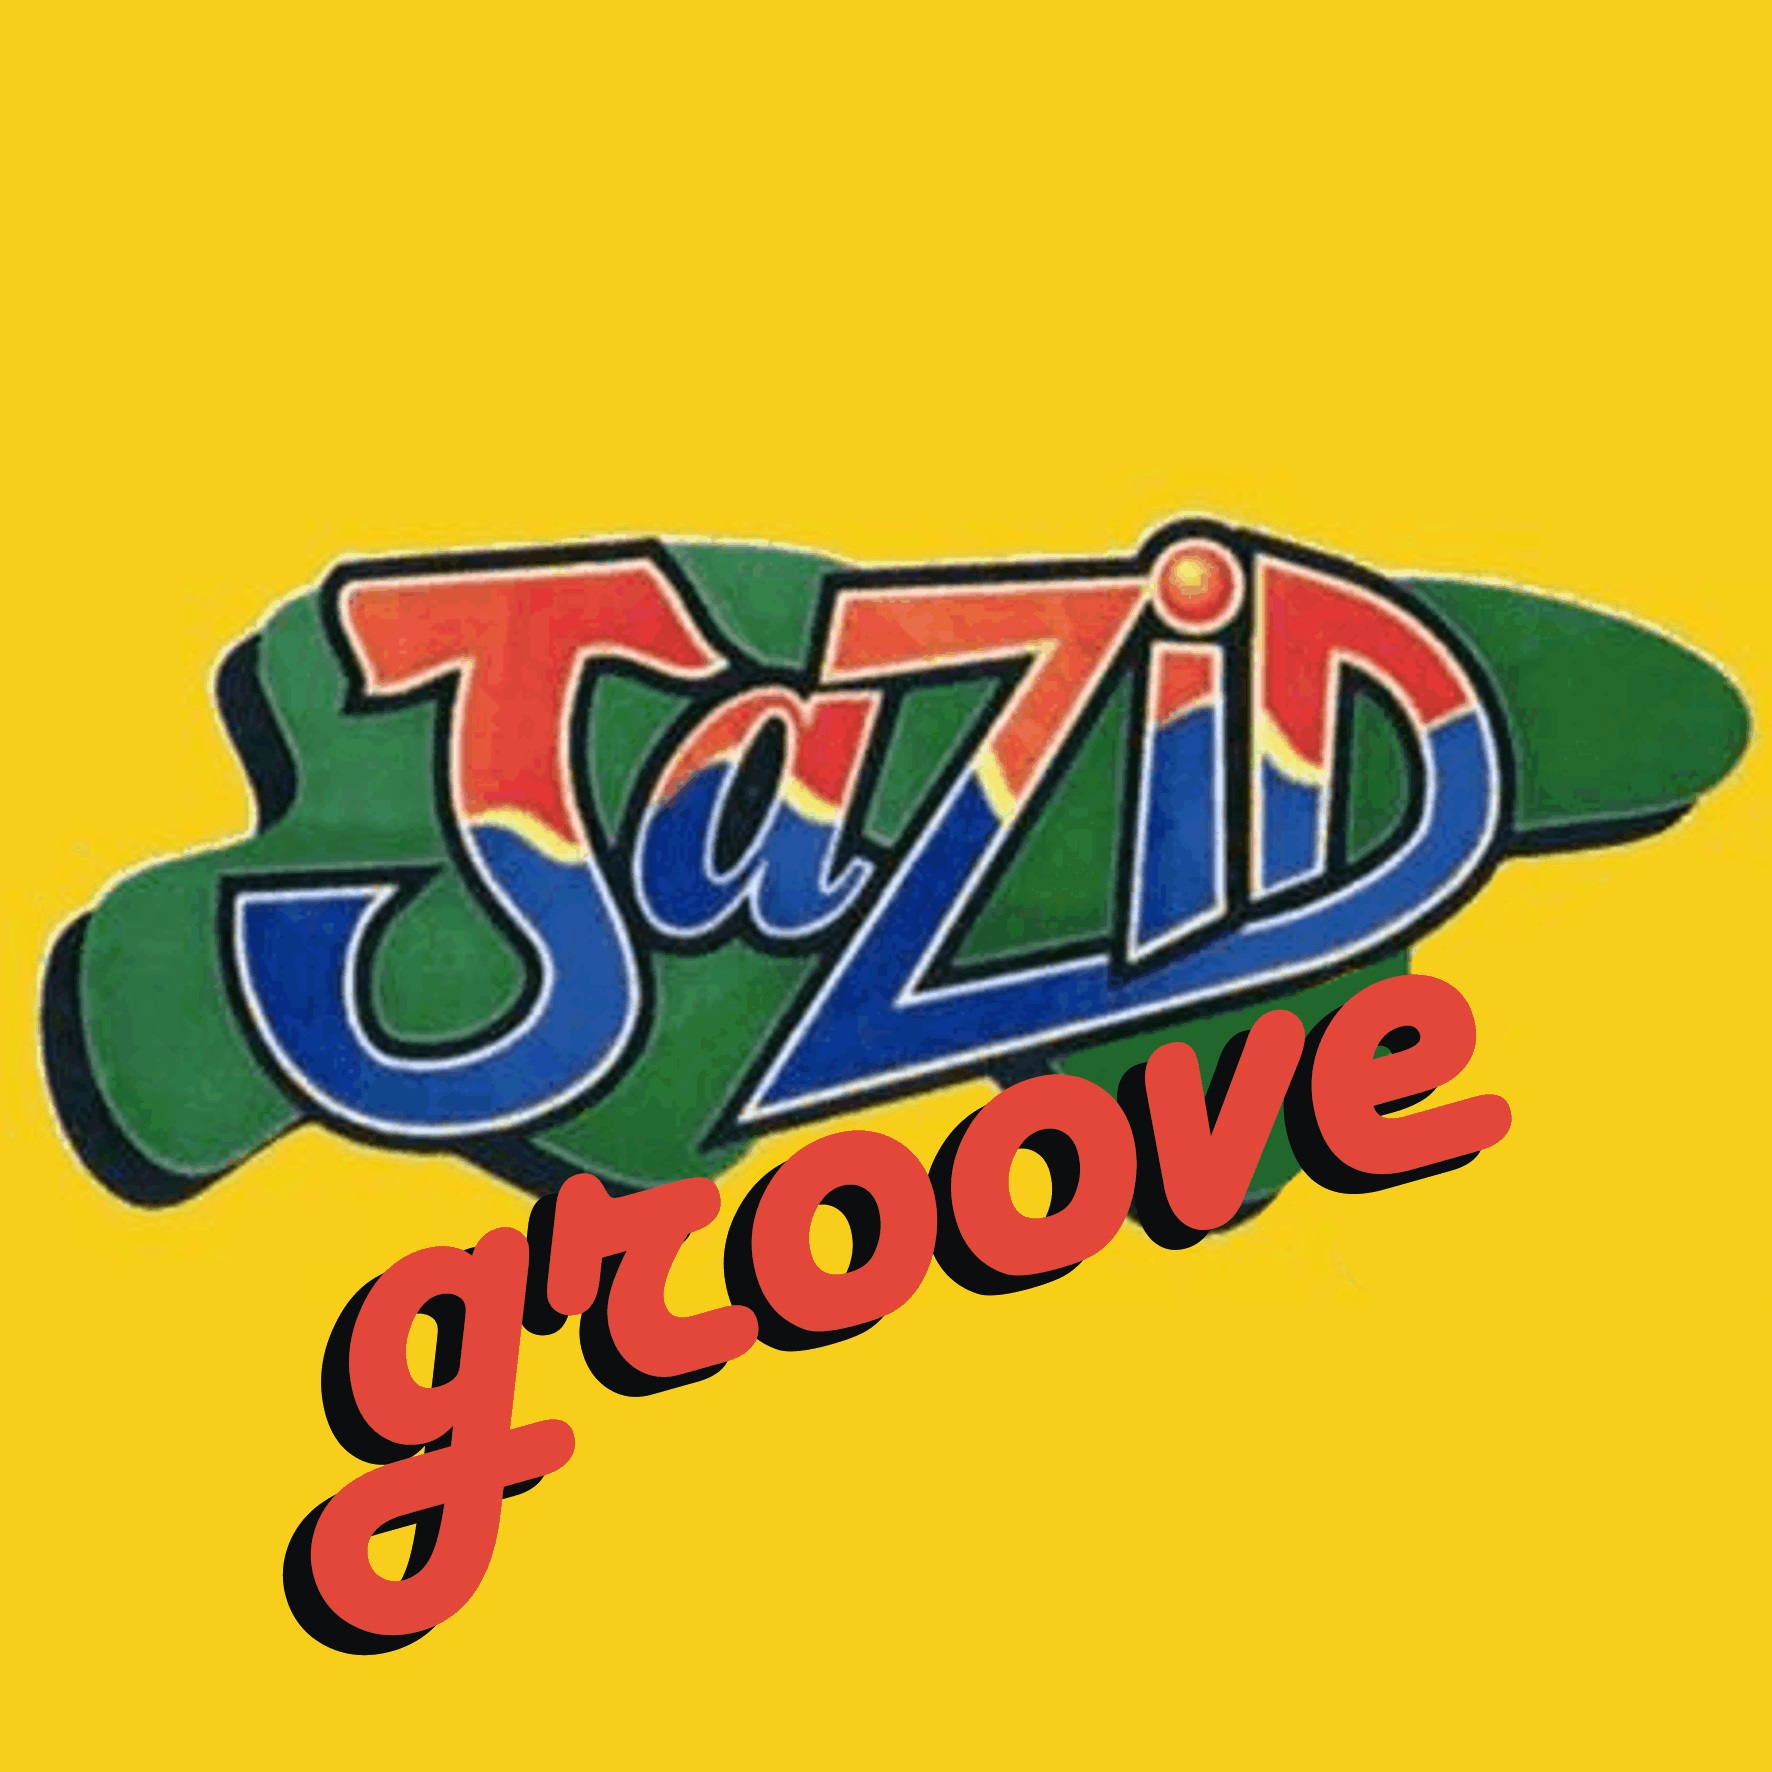 Jazid Groove 66